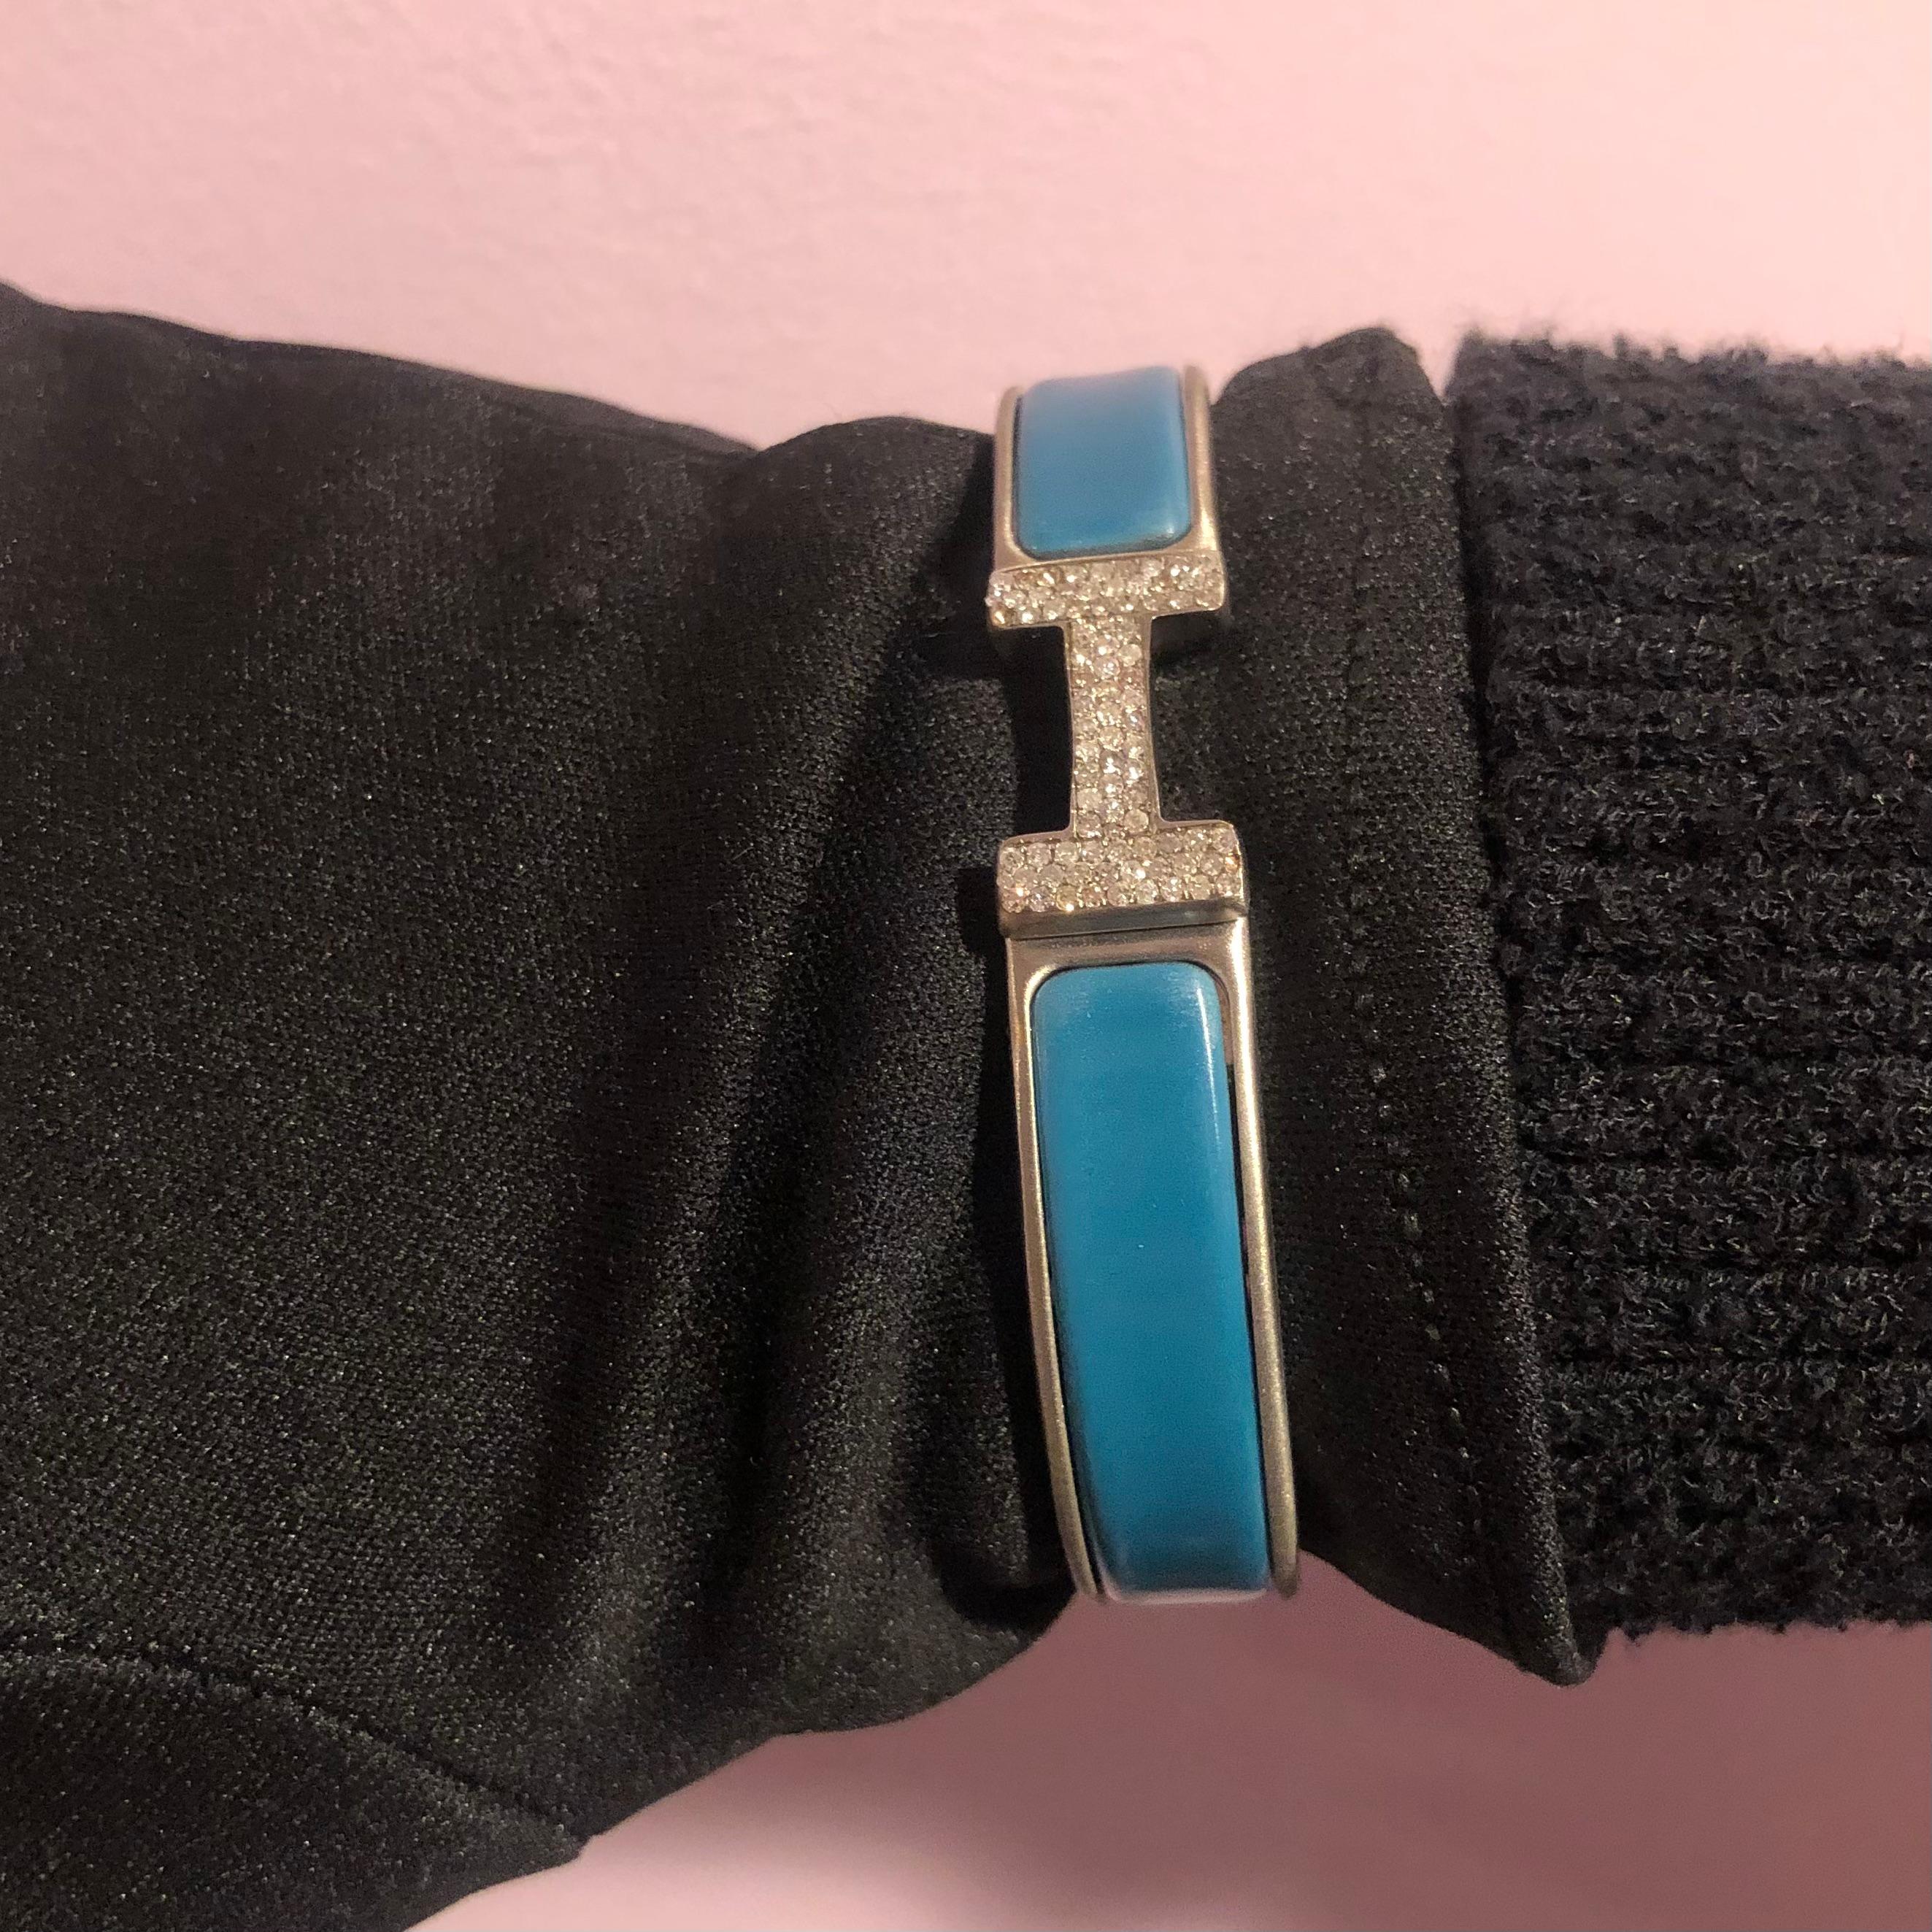 Custom Diamond Hermes Clic H Armband komplett mit Originalverpackung.

Ein Original Hermes Clic H Armband GM Größe in Blau und Silber Farbe ist individuell von Hand mit ca. 1,25 Karat von natürlichen echten Erde abgebaut SI-I Diamanten gesetzt. Die